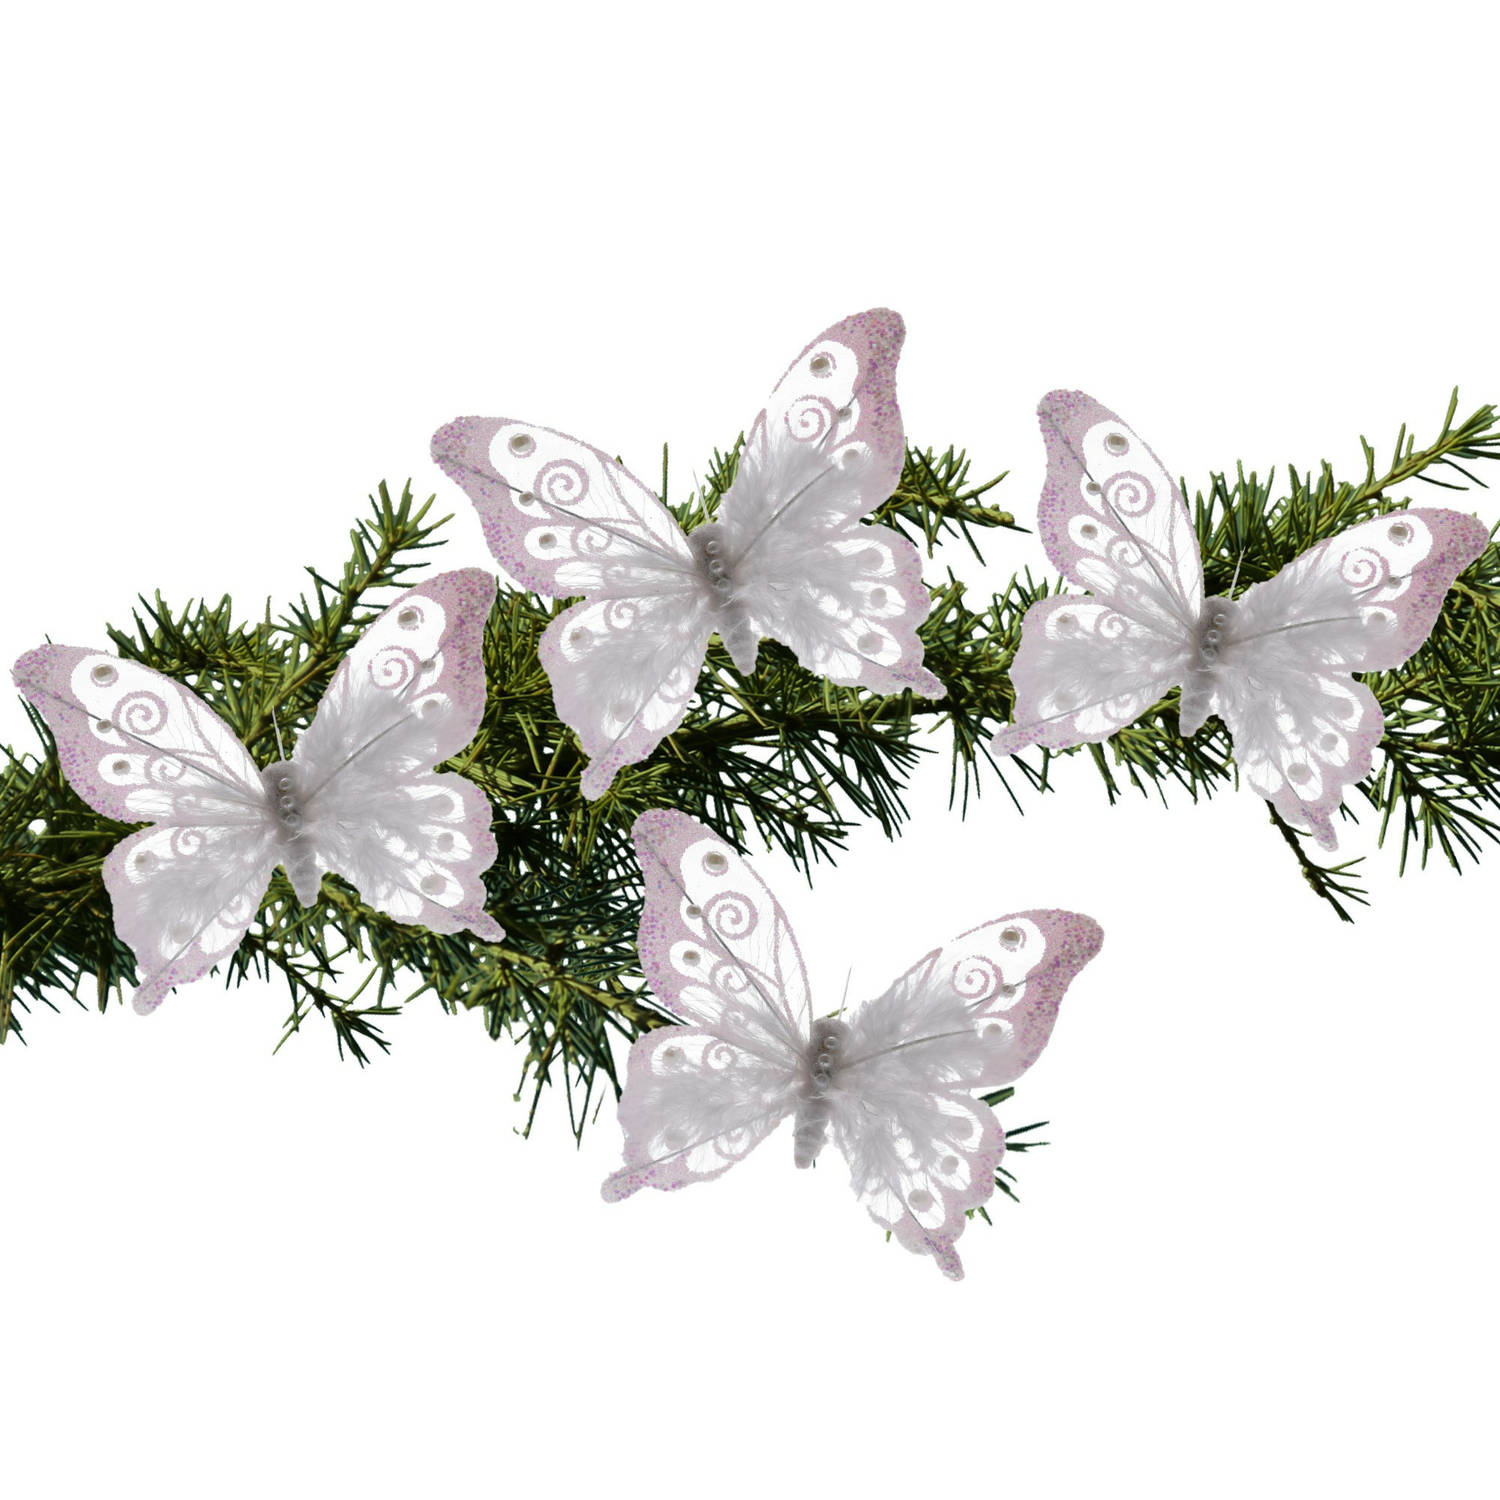 4x Stuks Kerstboom Decoratie Vlinders Op Clip Glitter Wit 15,5 Cm Kersthangers